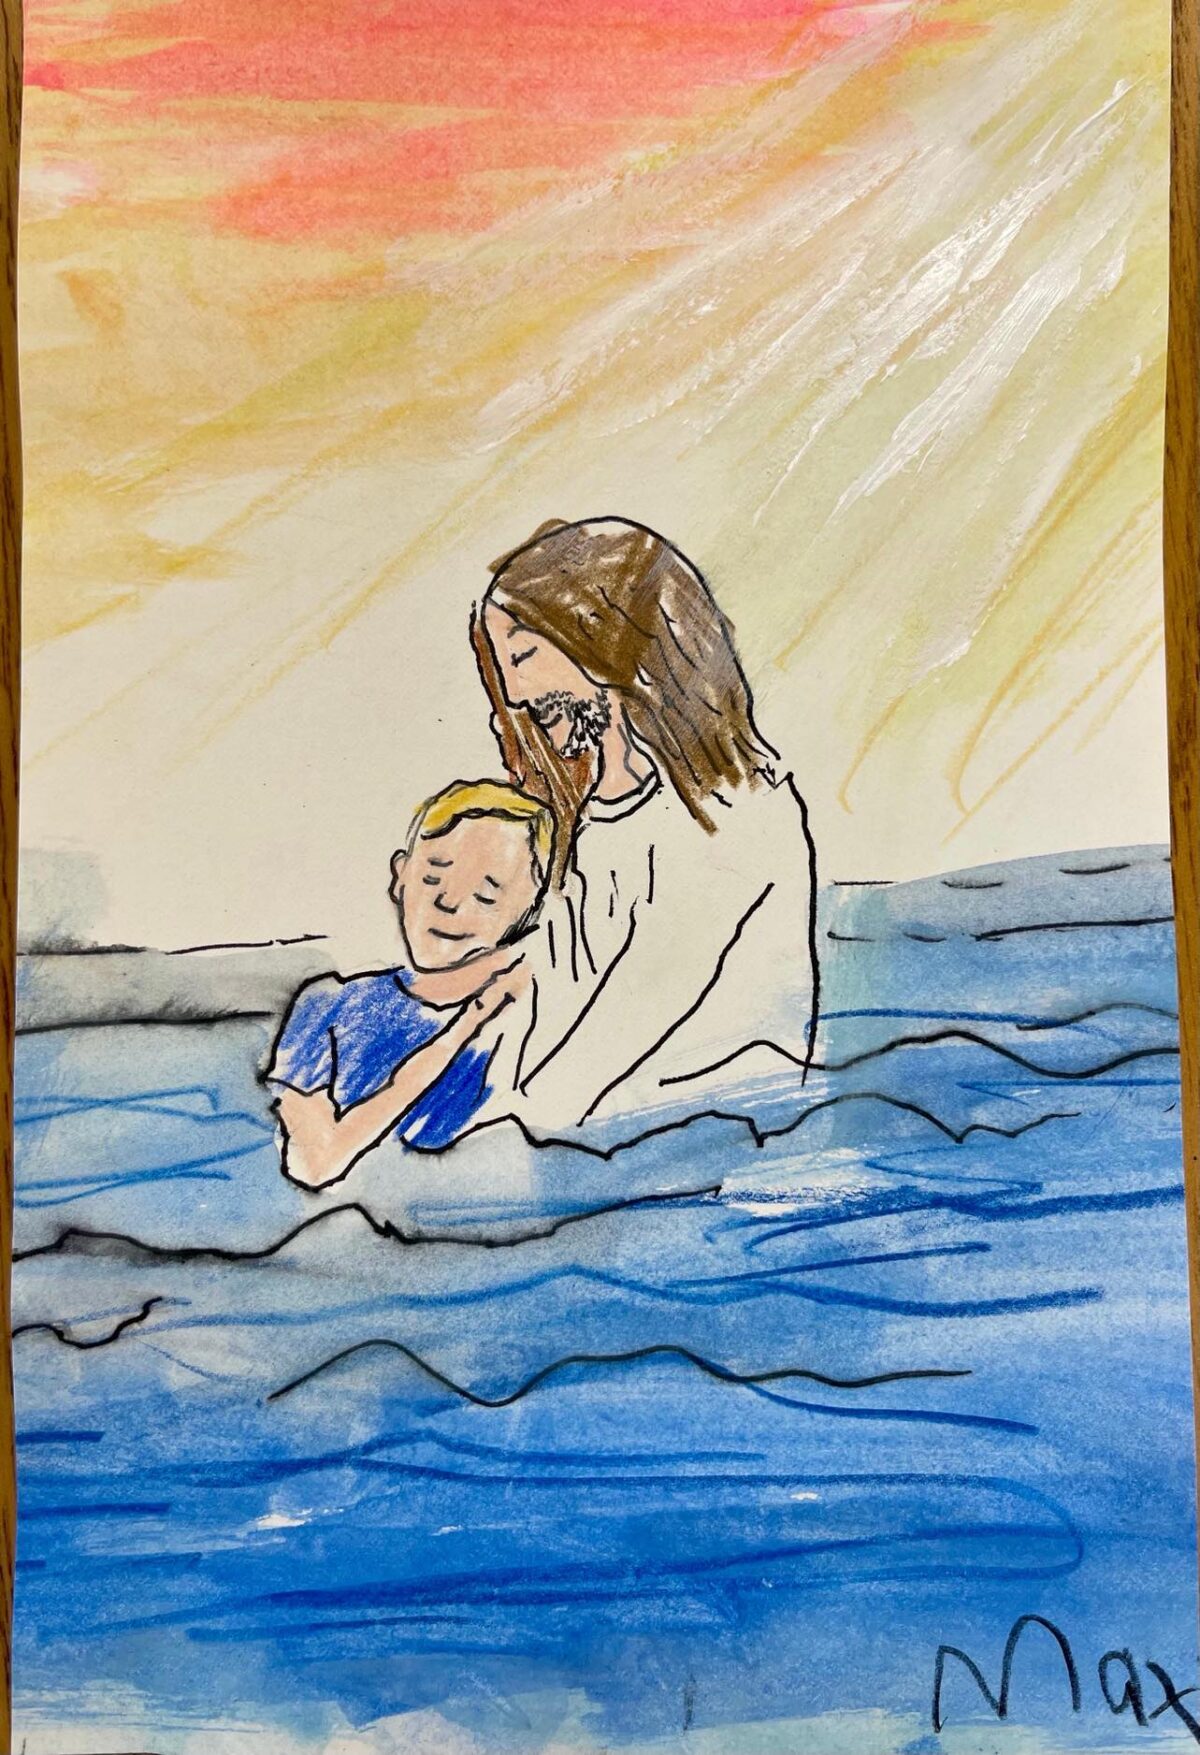 Bé Max đã vẽ bức tranh này thể hiện bản thân trong vòng tay của Chúa Jesus trong hồ bơi, với sự hợp tác cùng nghệ sĩ Anna Dieter Rachal tại một trại nghệ thuật vào năm 2021. (Ảnh: Đăng dưới sự cho phép của cô Courtney McKee)